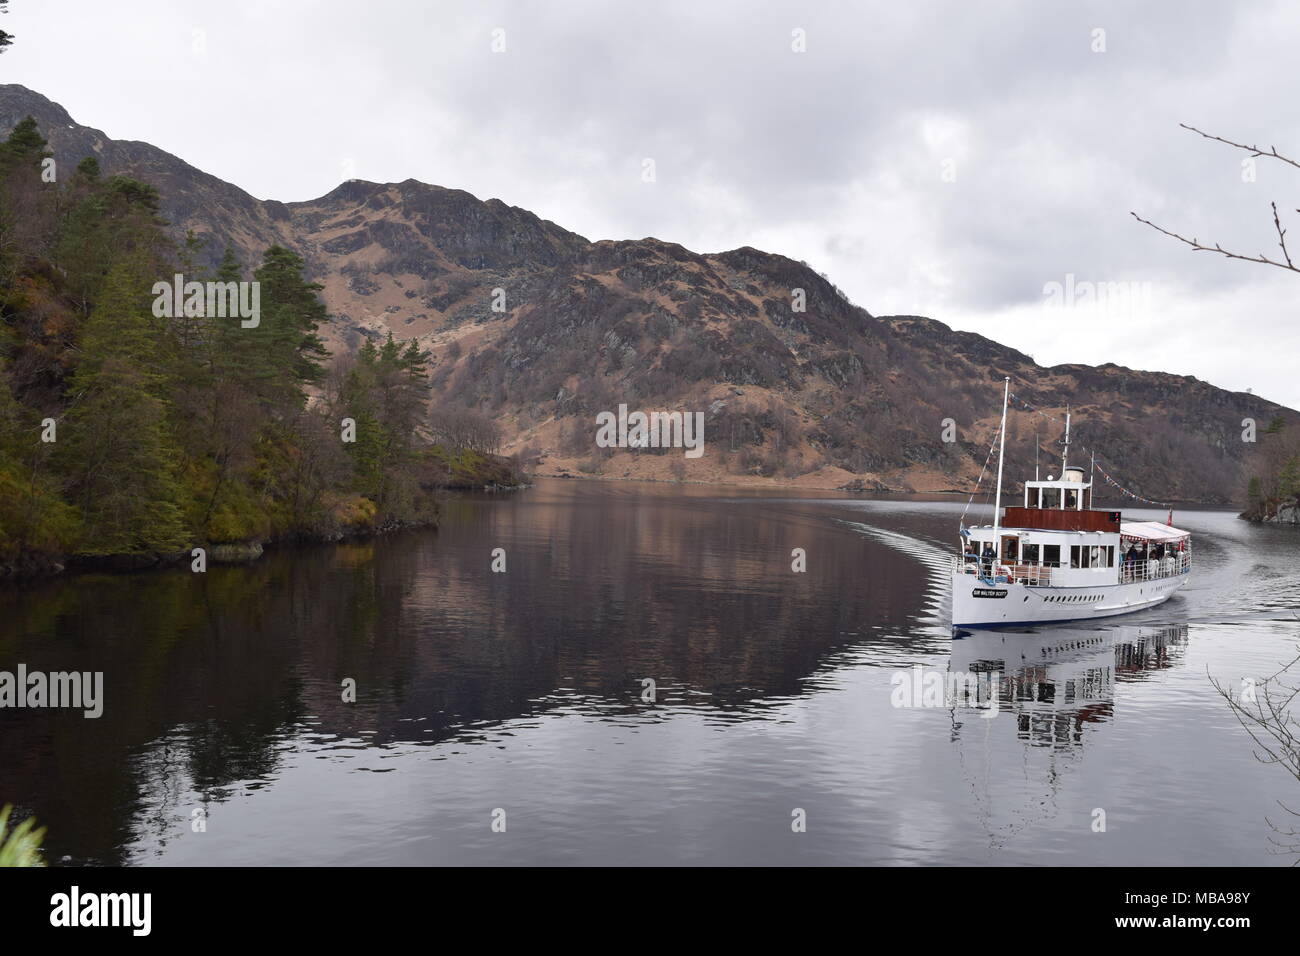 'Loch Katrine trossachs Highlands della Scozia'trossachs'highlands' 'Scotland'steamship' 'sir walter scott" "la signora del lago' 'beinn chabbair'. Foto Stock